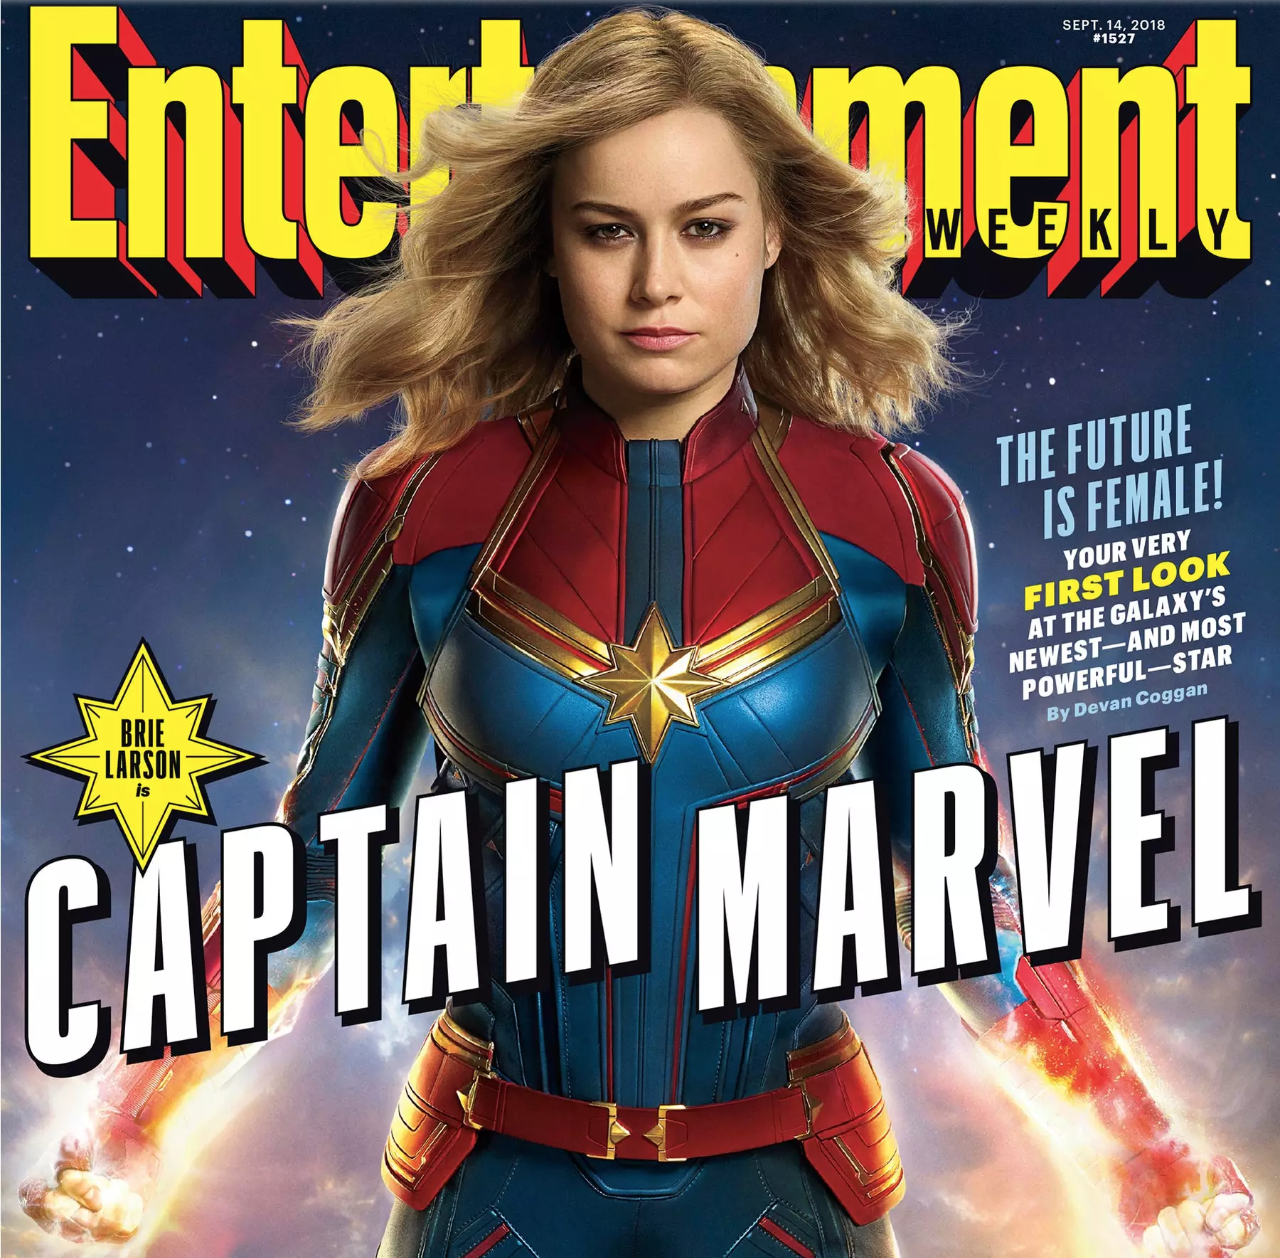 Primeras imágenes oficiales de Capitana Marvel